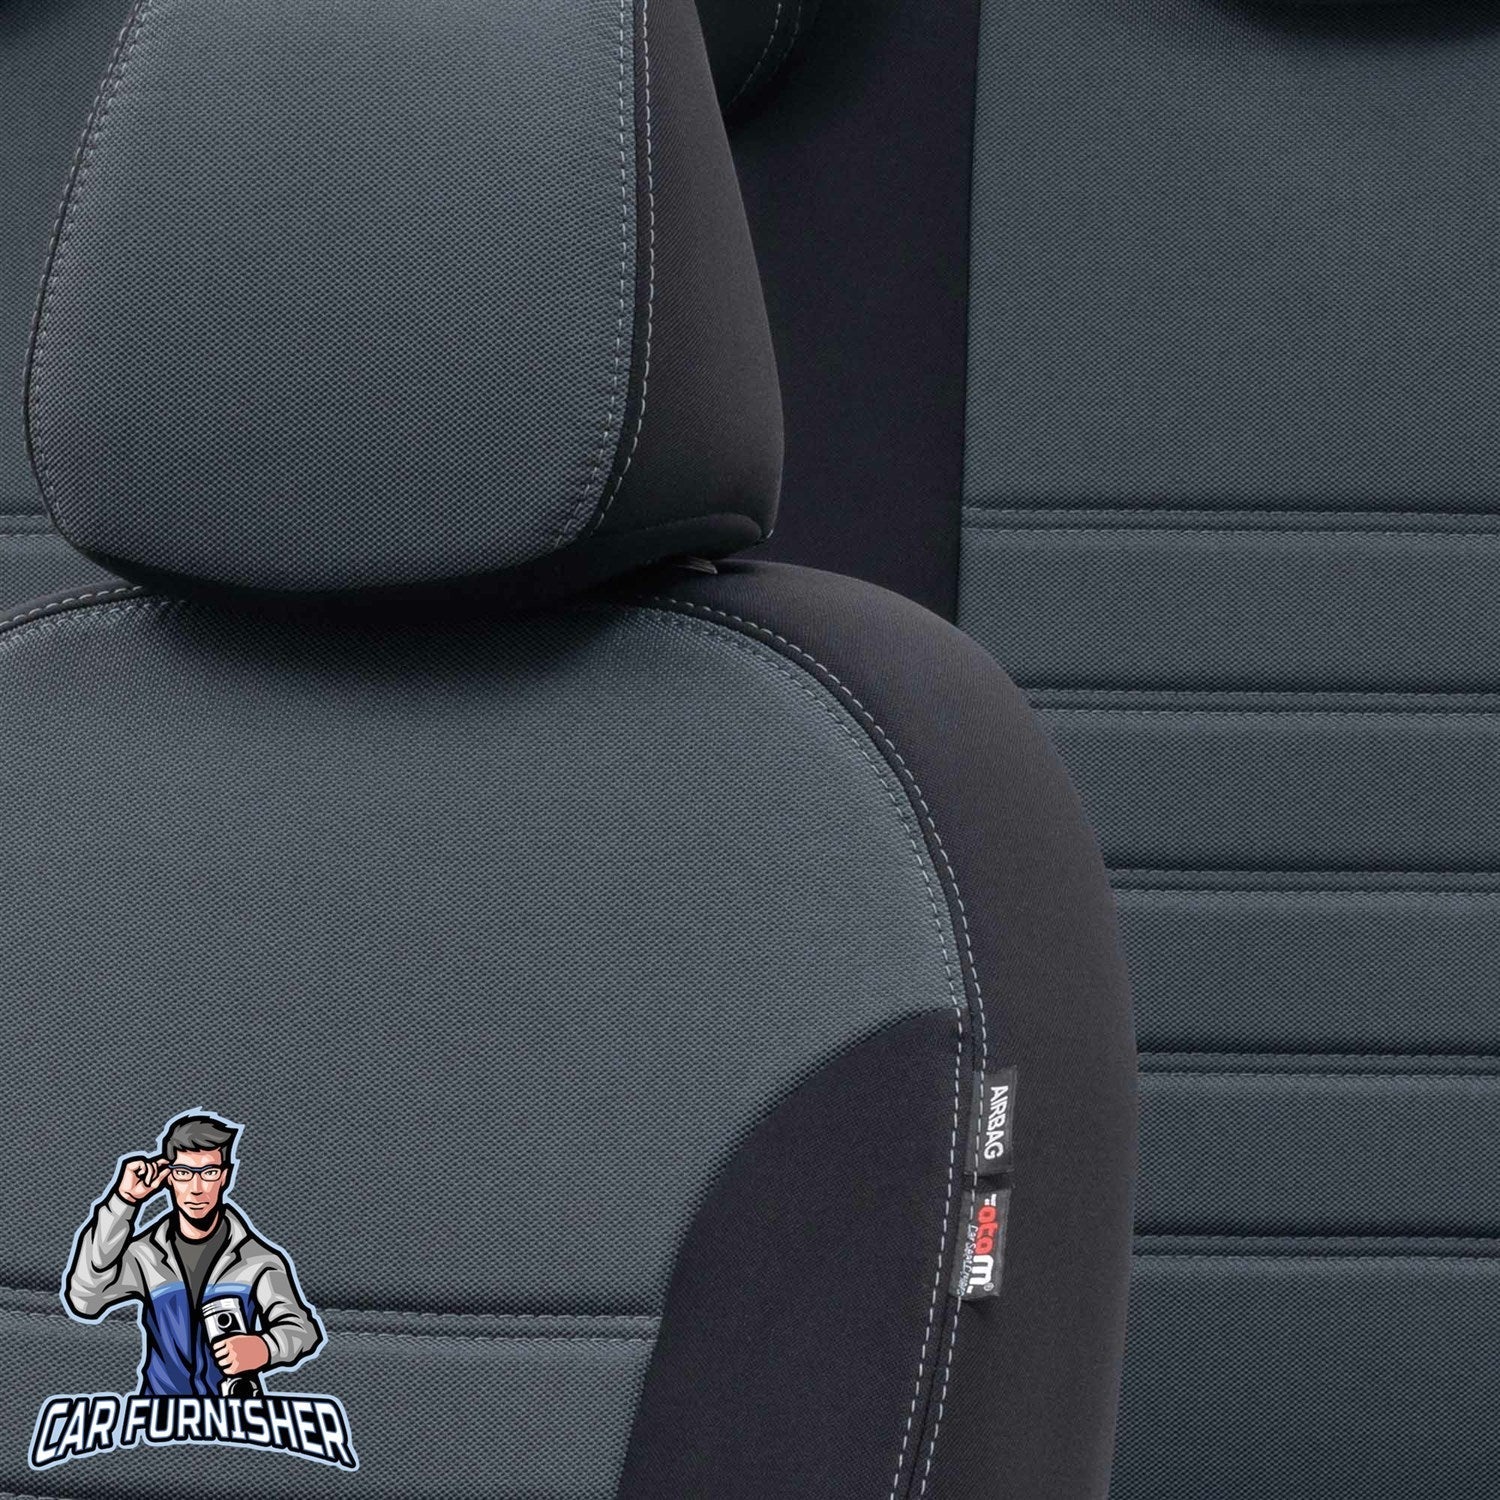 Seat Ateca Seat Covers Original Jacquard Design Smoked Black Jacquard Fabric